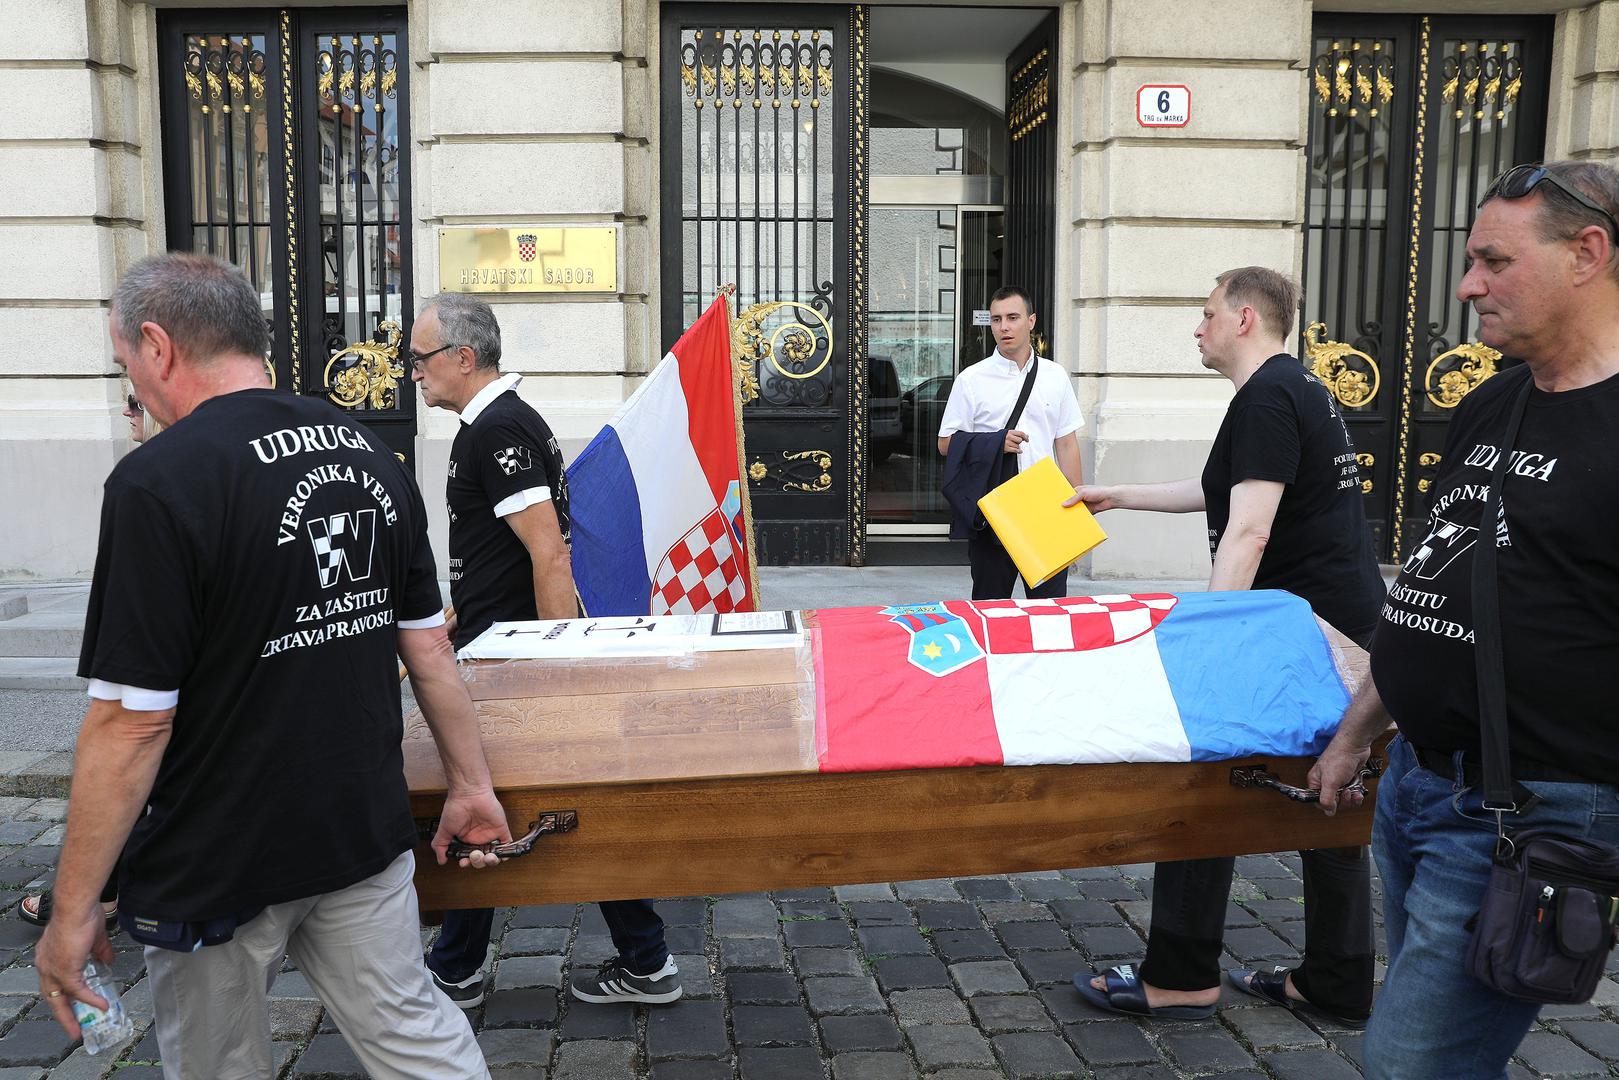 Udruga za zaštitu žrtava hrvatskoga pravosuđa Veronika Vere organizirala je danas u Zagrebu akciju nazvanu Sprovod pravde. 